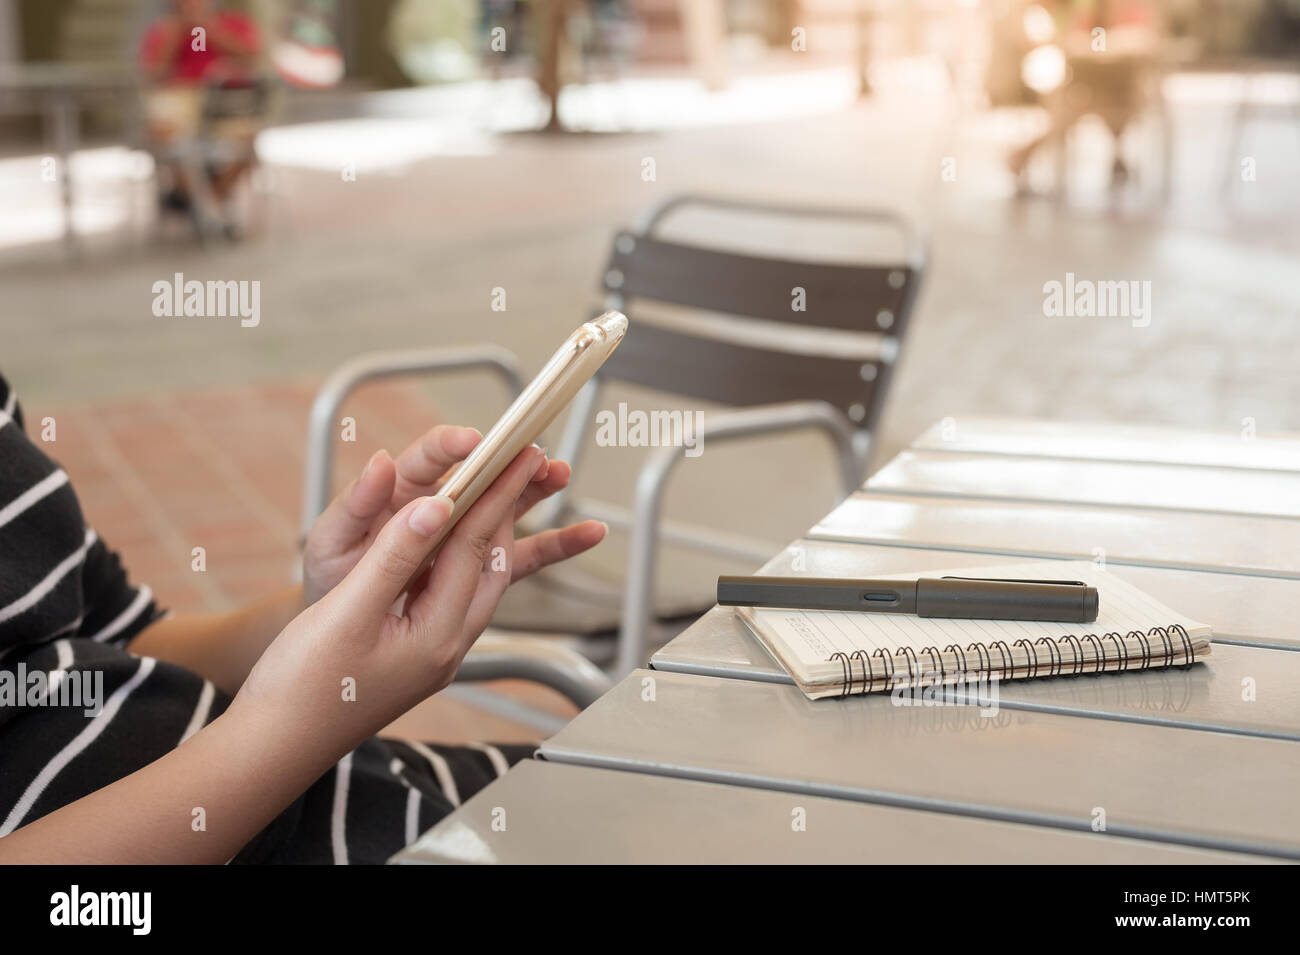 Mujer tocando la mano sobre la pantalla del teléfono móvil en la cafetería. Fin de semana con el estilo de vida urbano concepto tecnológico Foto de stock